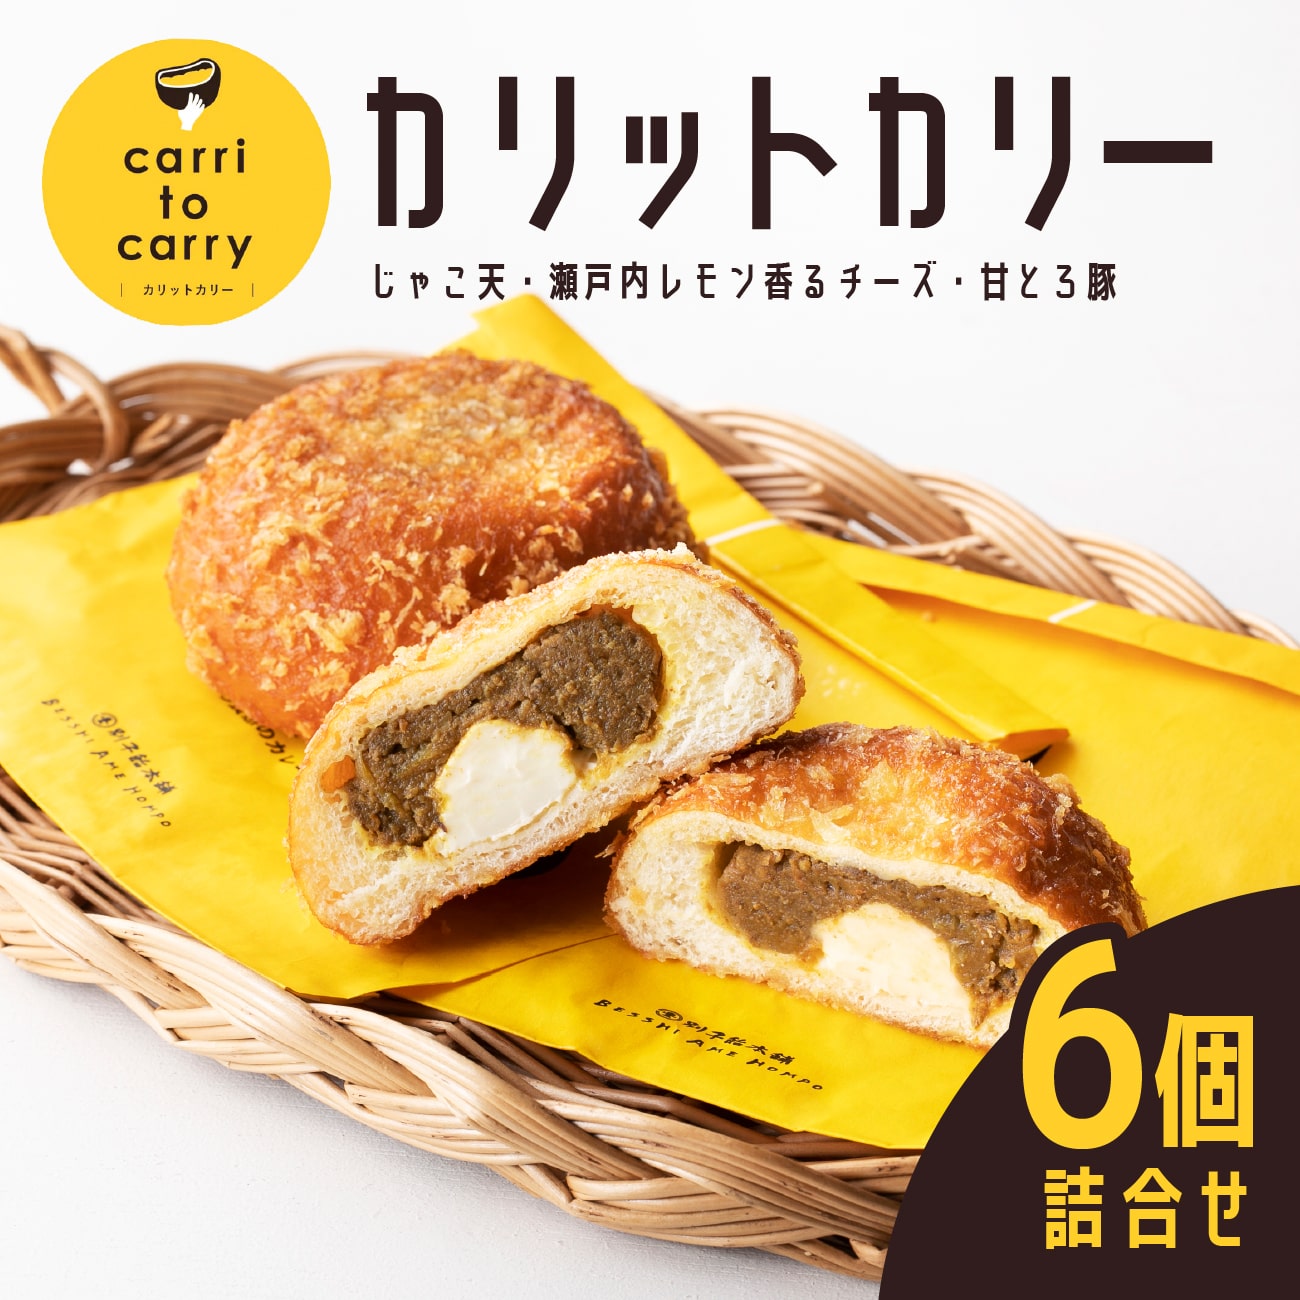 【送料無料】カリットカリー 6個詰